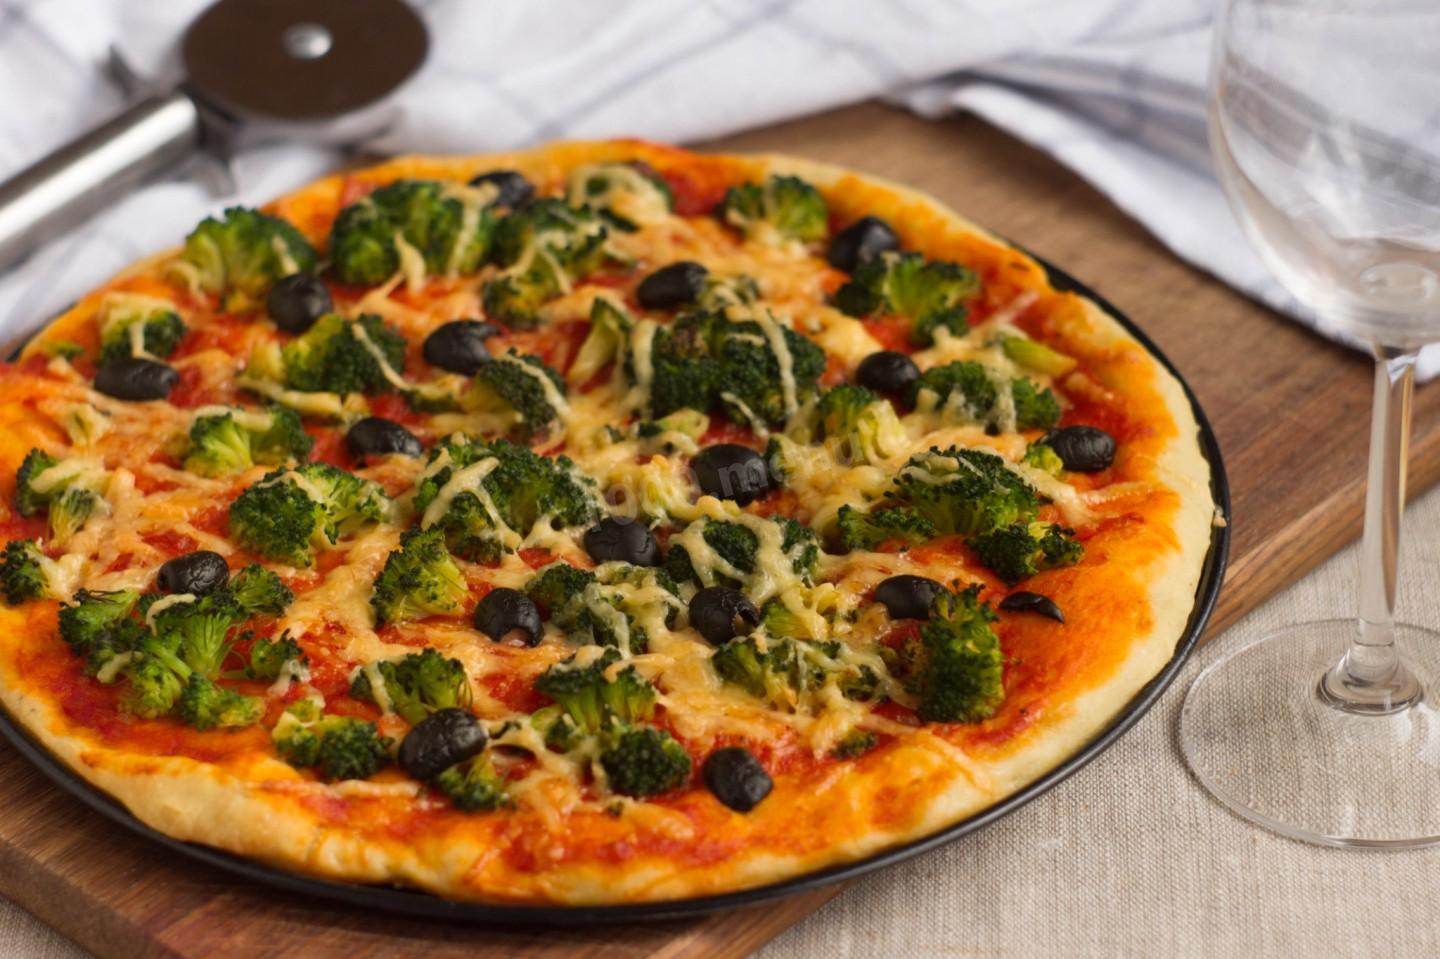 Вегетарианская пицца - рецепты теста и начинок с тофу, кабачками, грибами и ананасами